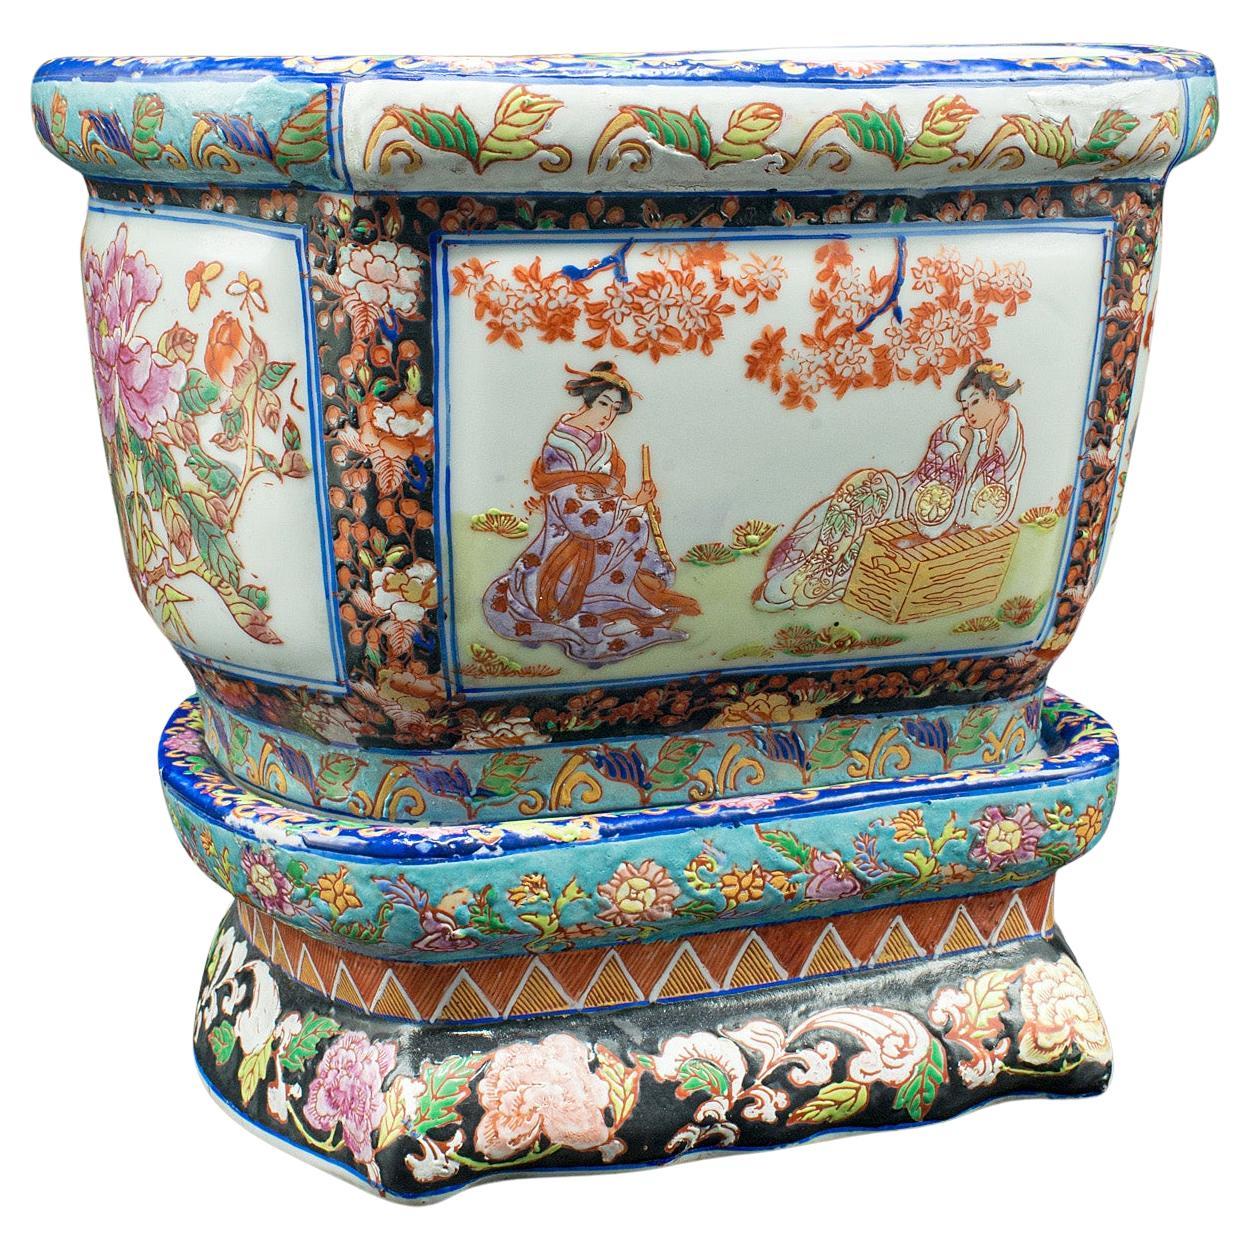 Antique Decorative Jardiniere, Chinese, Ceramic, Planter, Victorian, Circa 1900